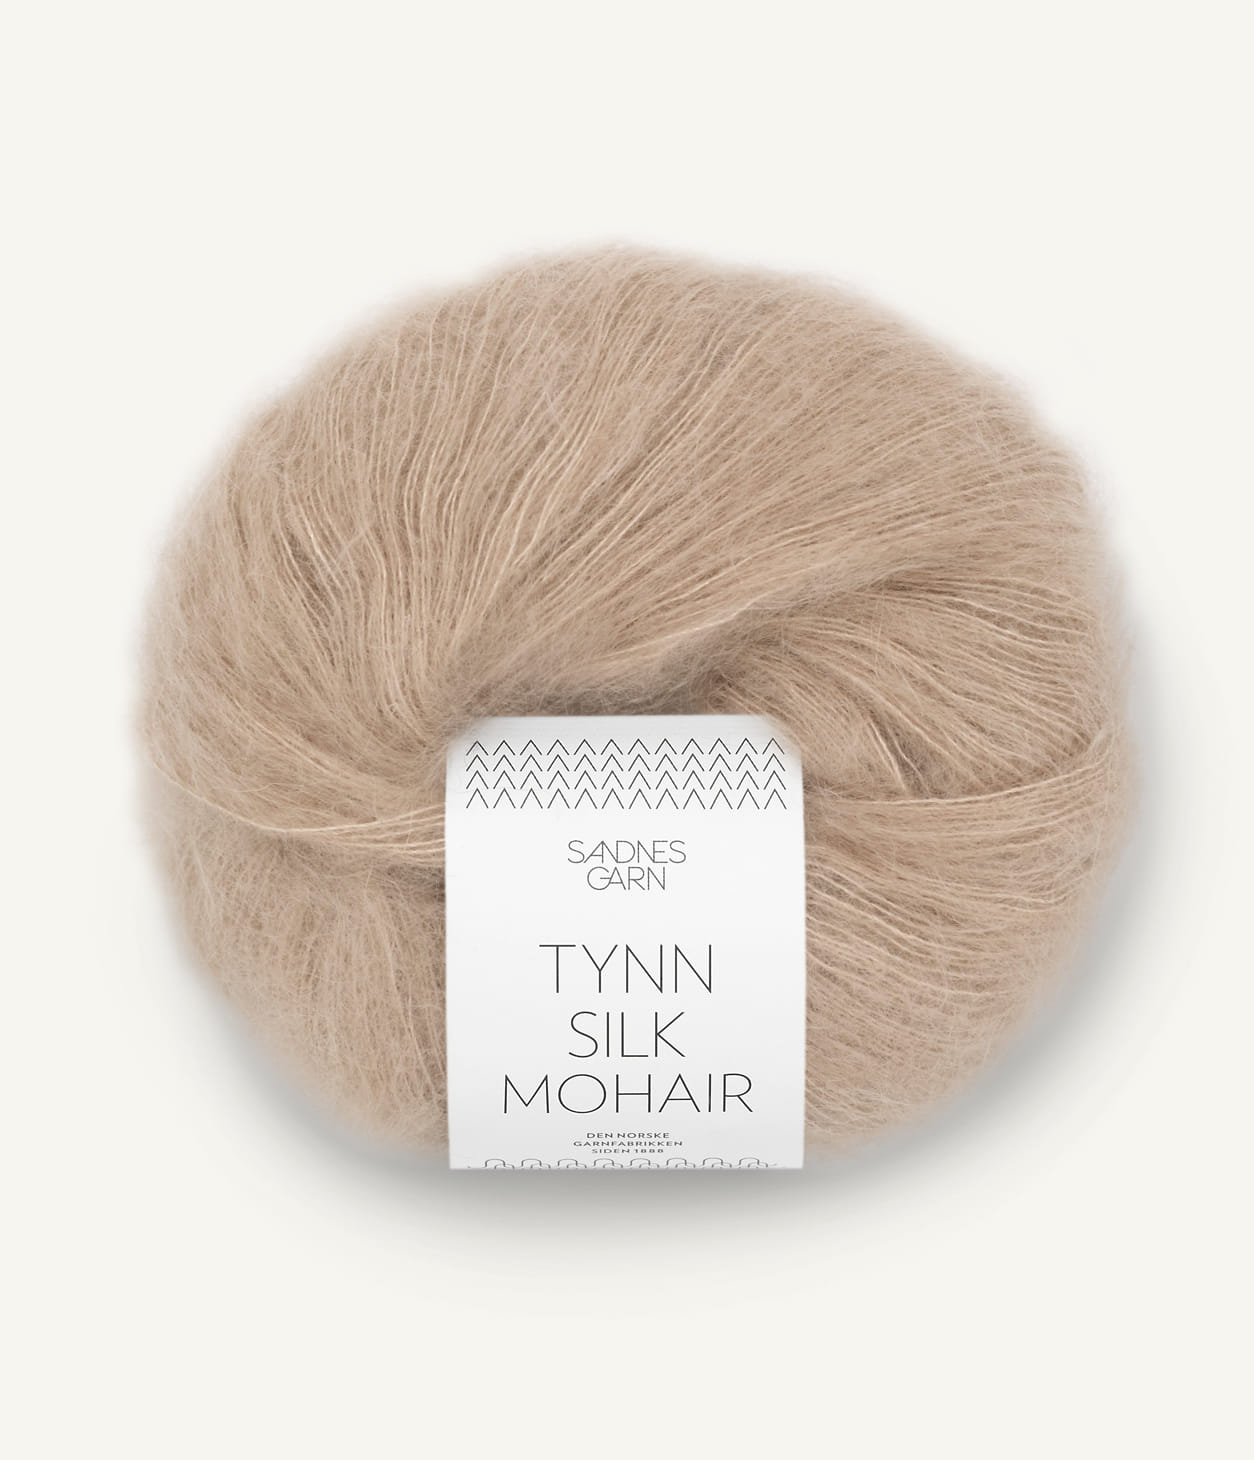 Kuvassa on Sandnes Garn Tynn Silk Mohair -lanka (yarn) värissä Lys Beige.